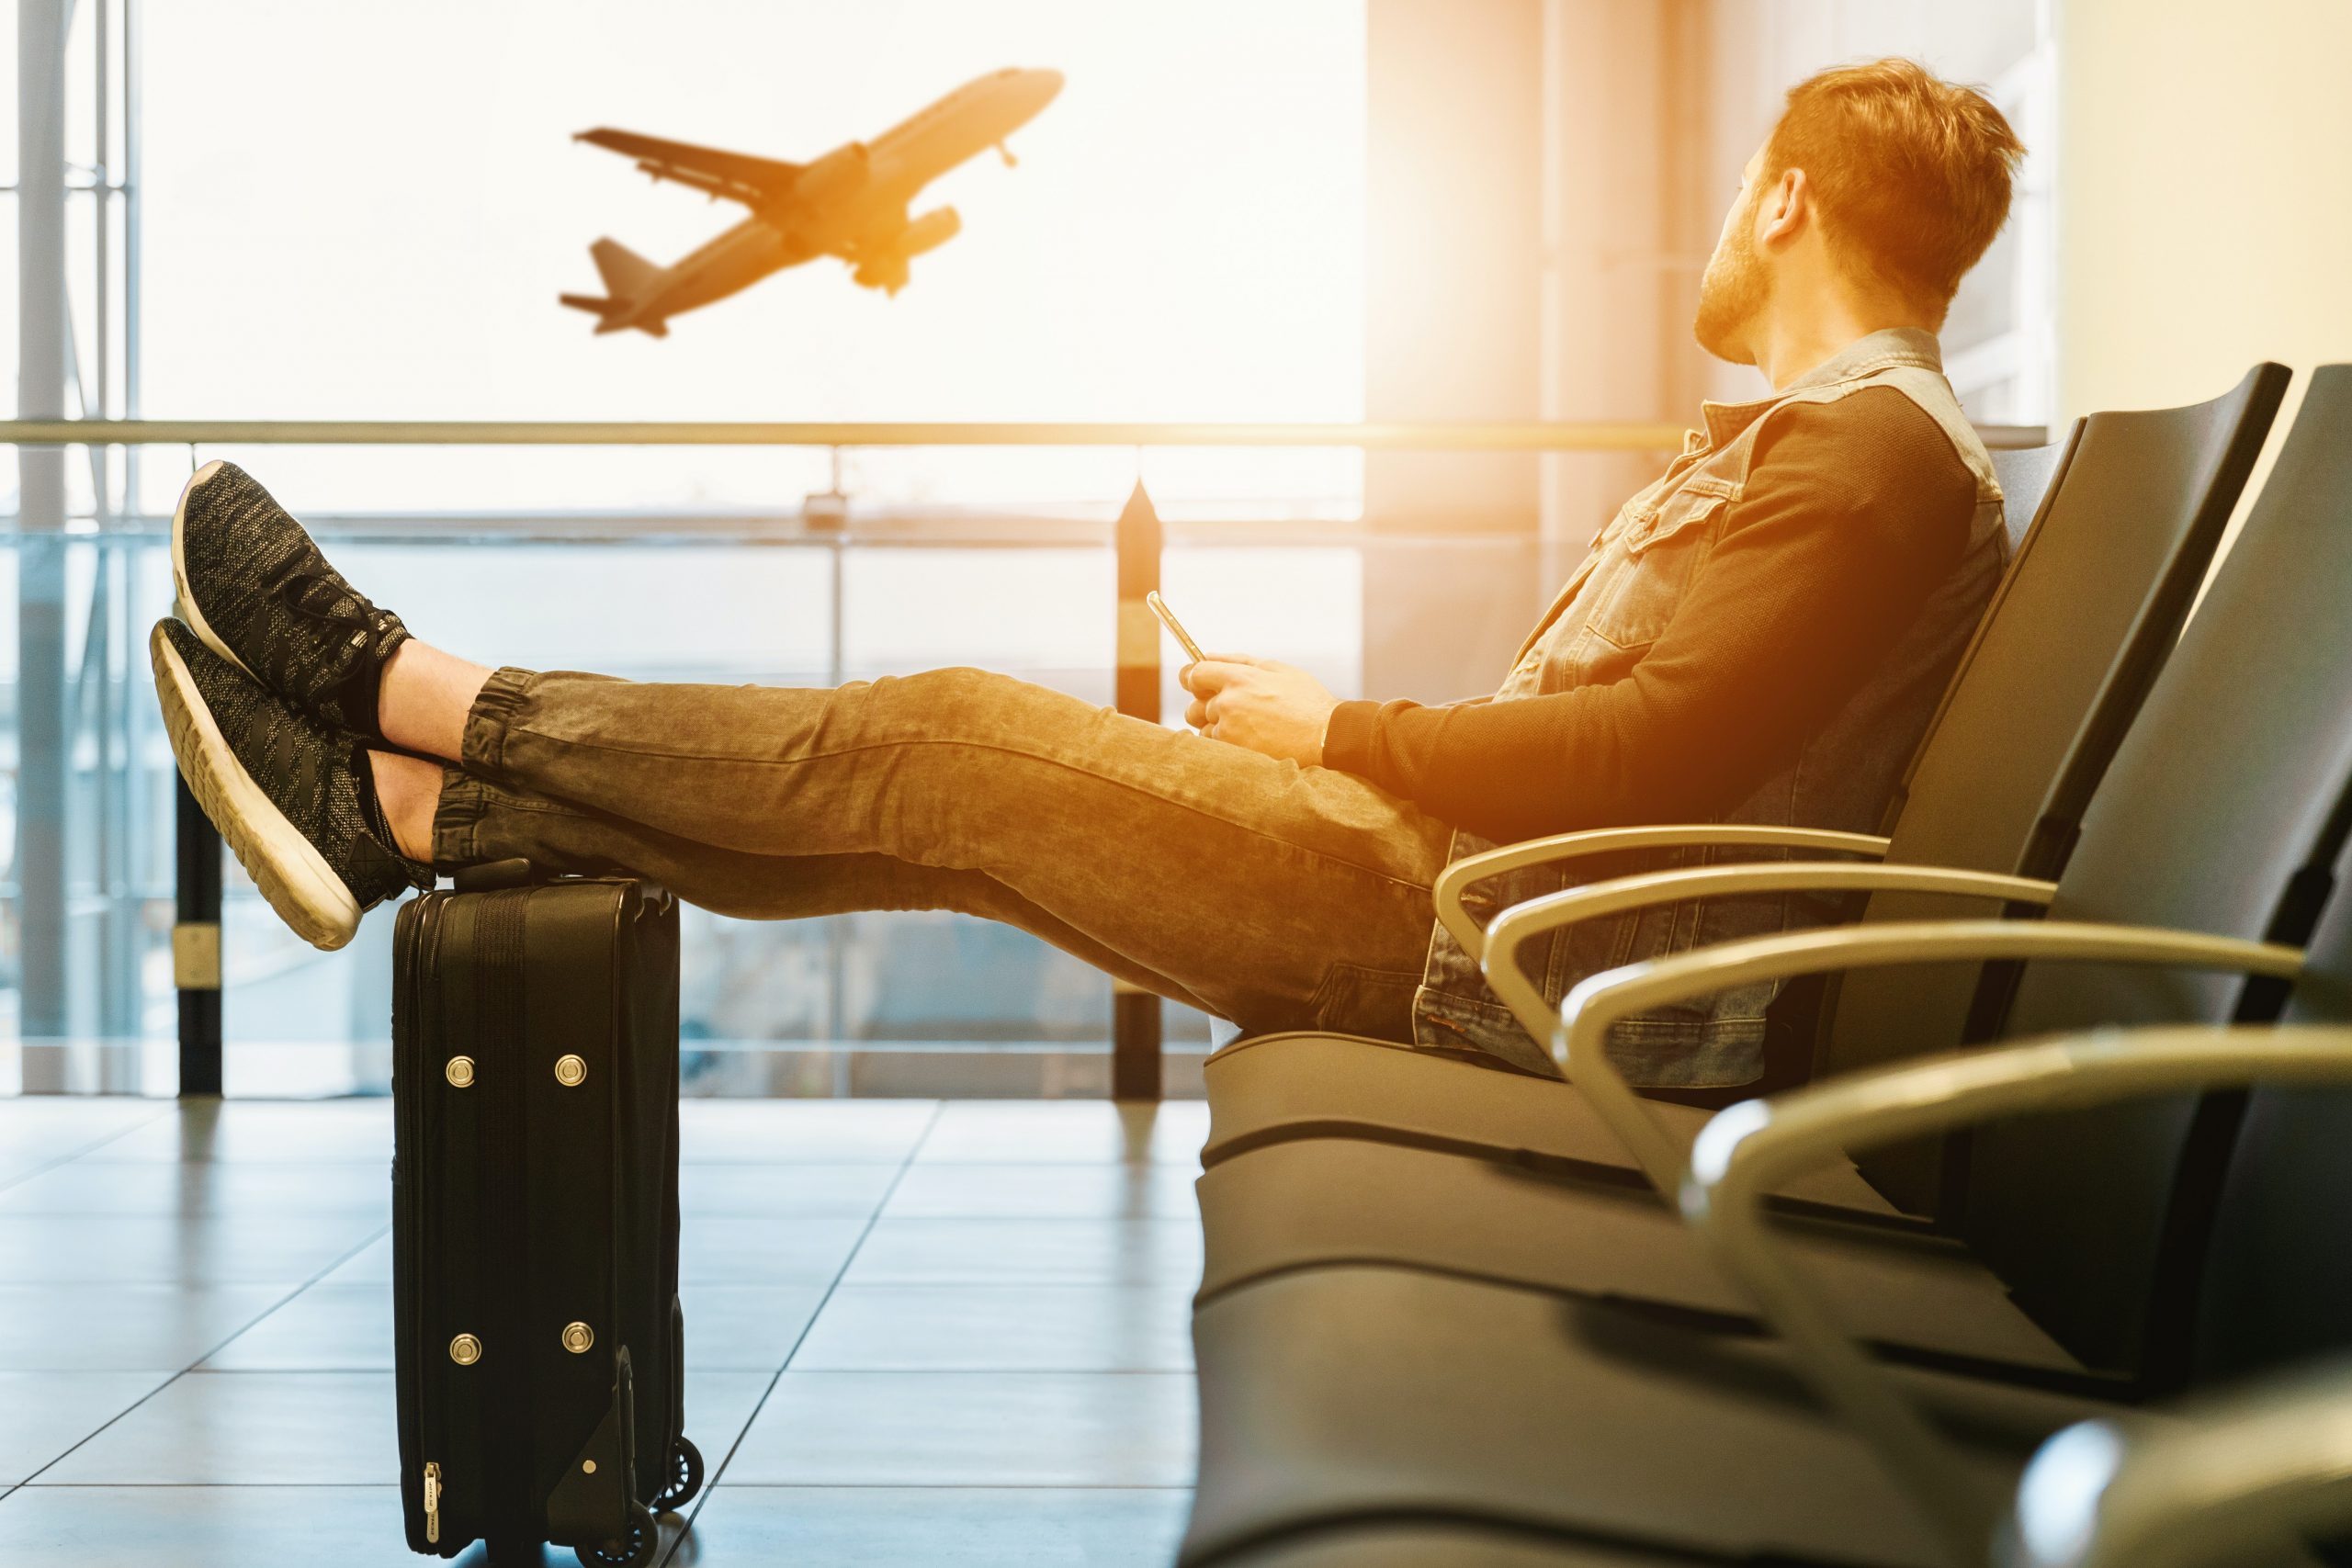 Blue Air-ügy: milyen kötelezettségei vannak az utazási irodáknak?